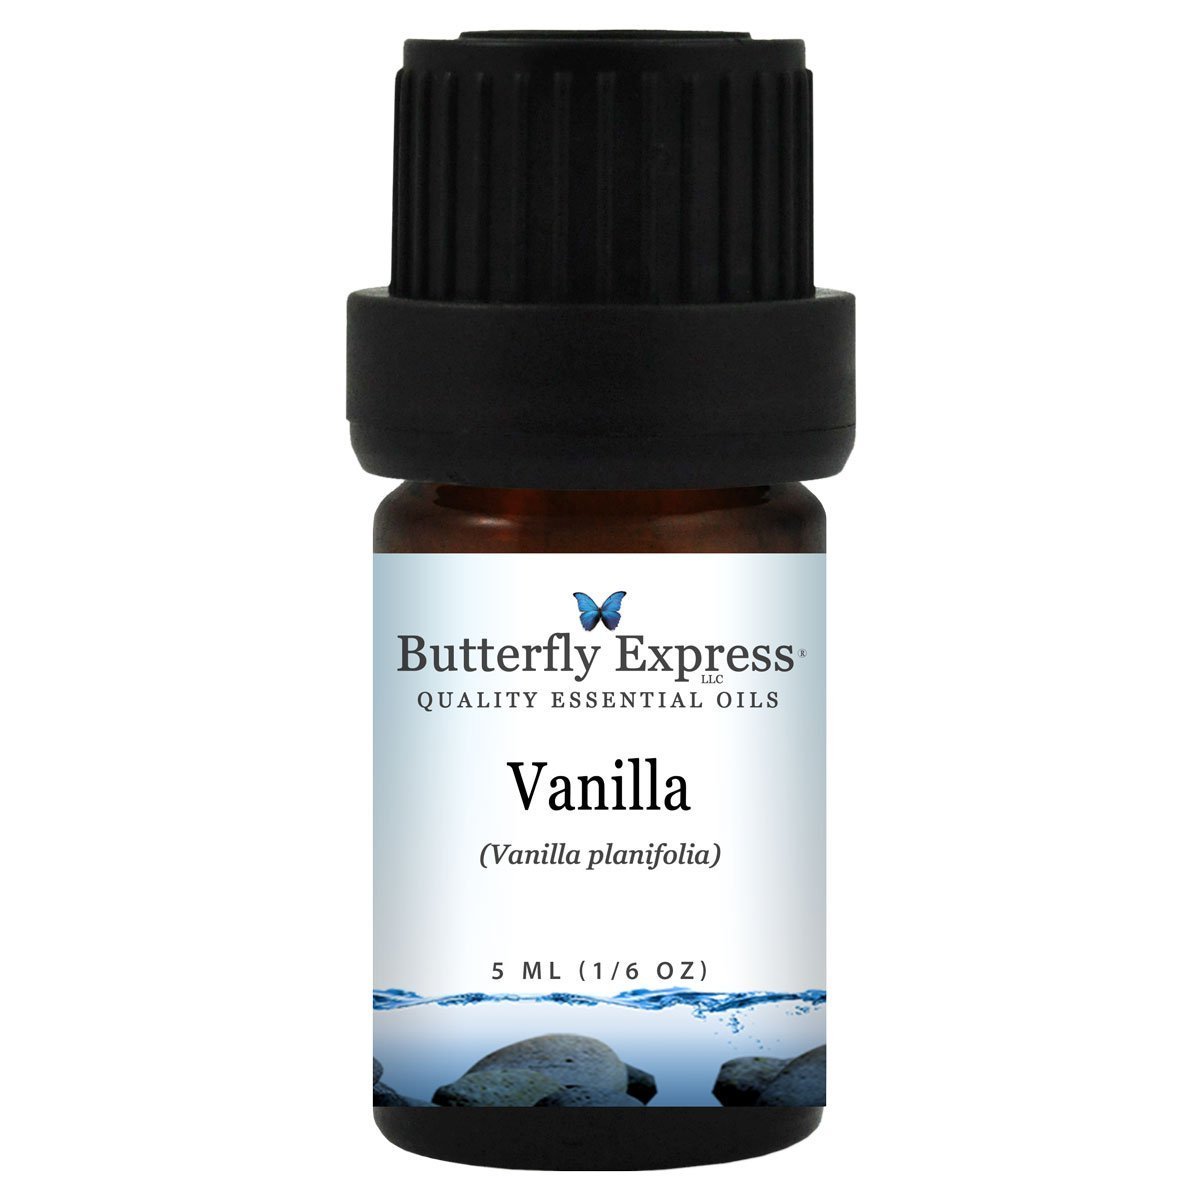 Vanilla essential oils